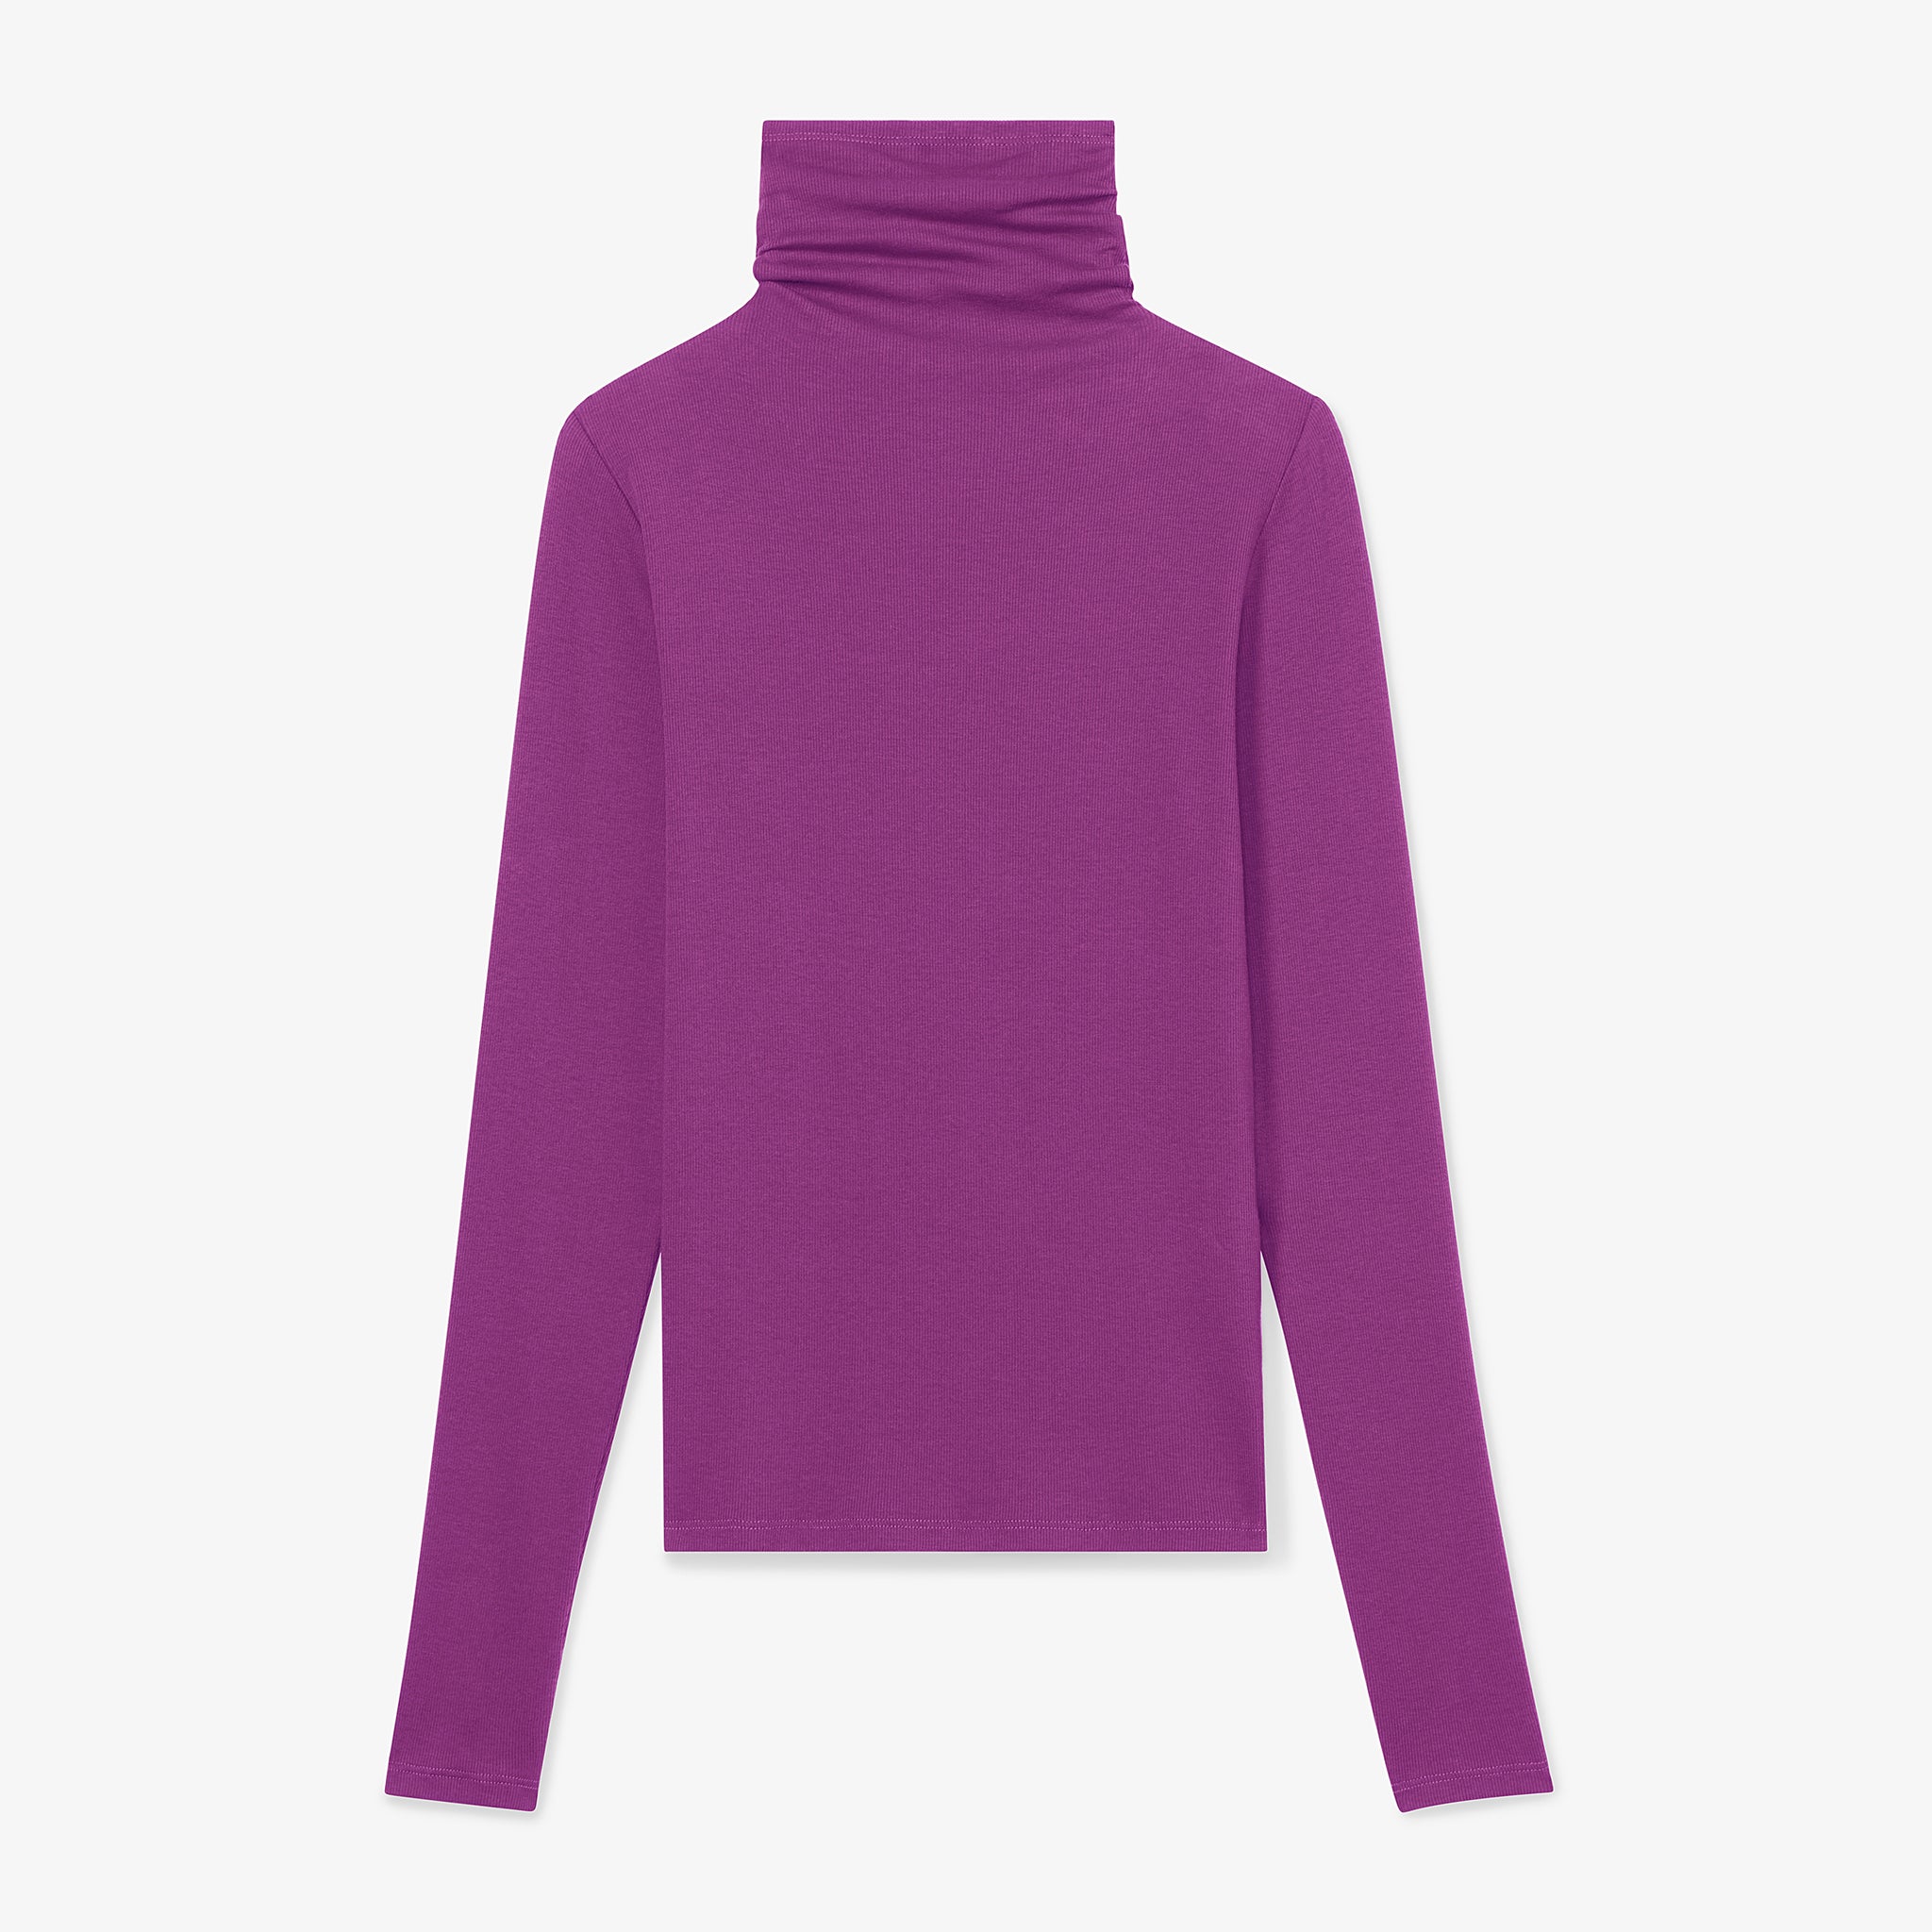 Packshot image of the Axam T-Shirt in Purple Jasper